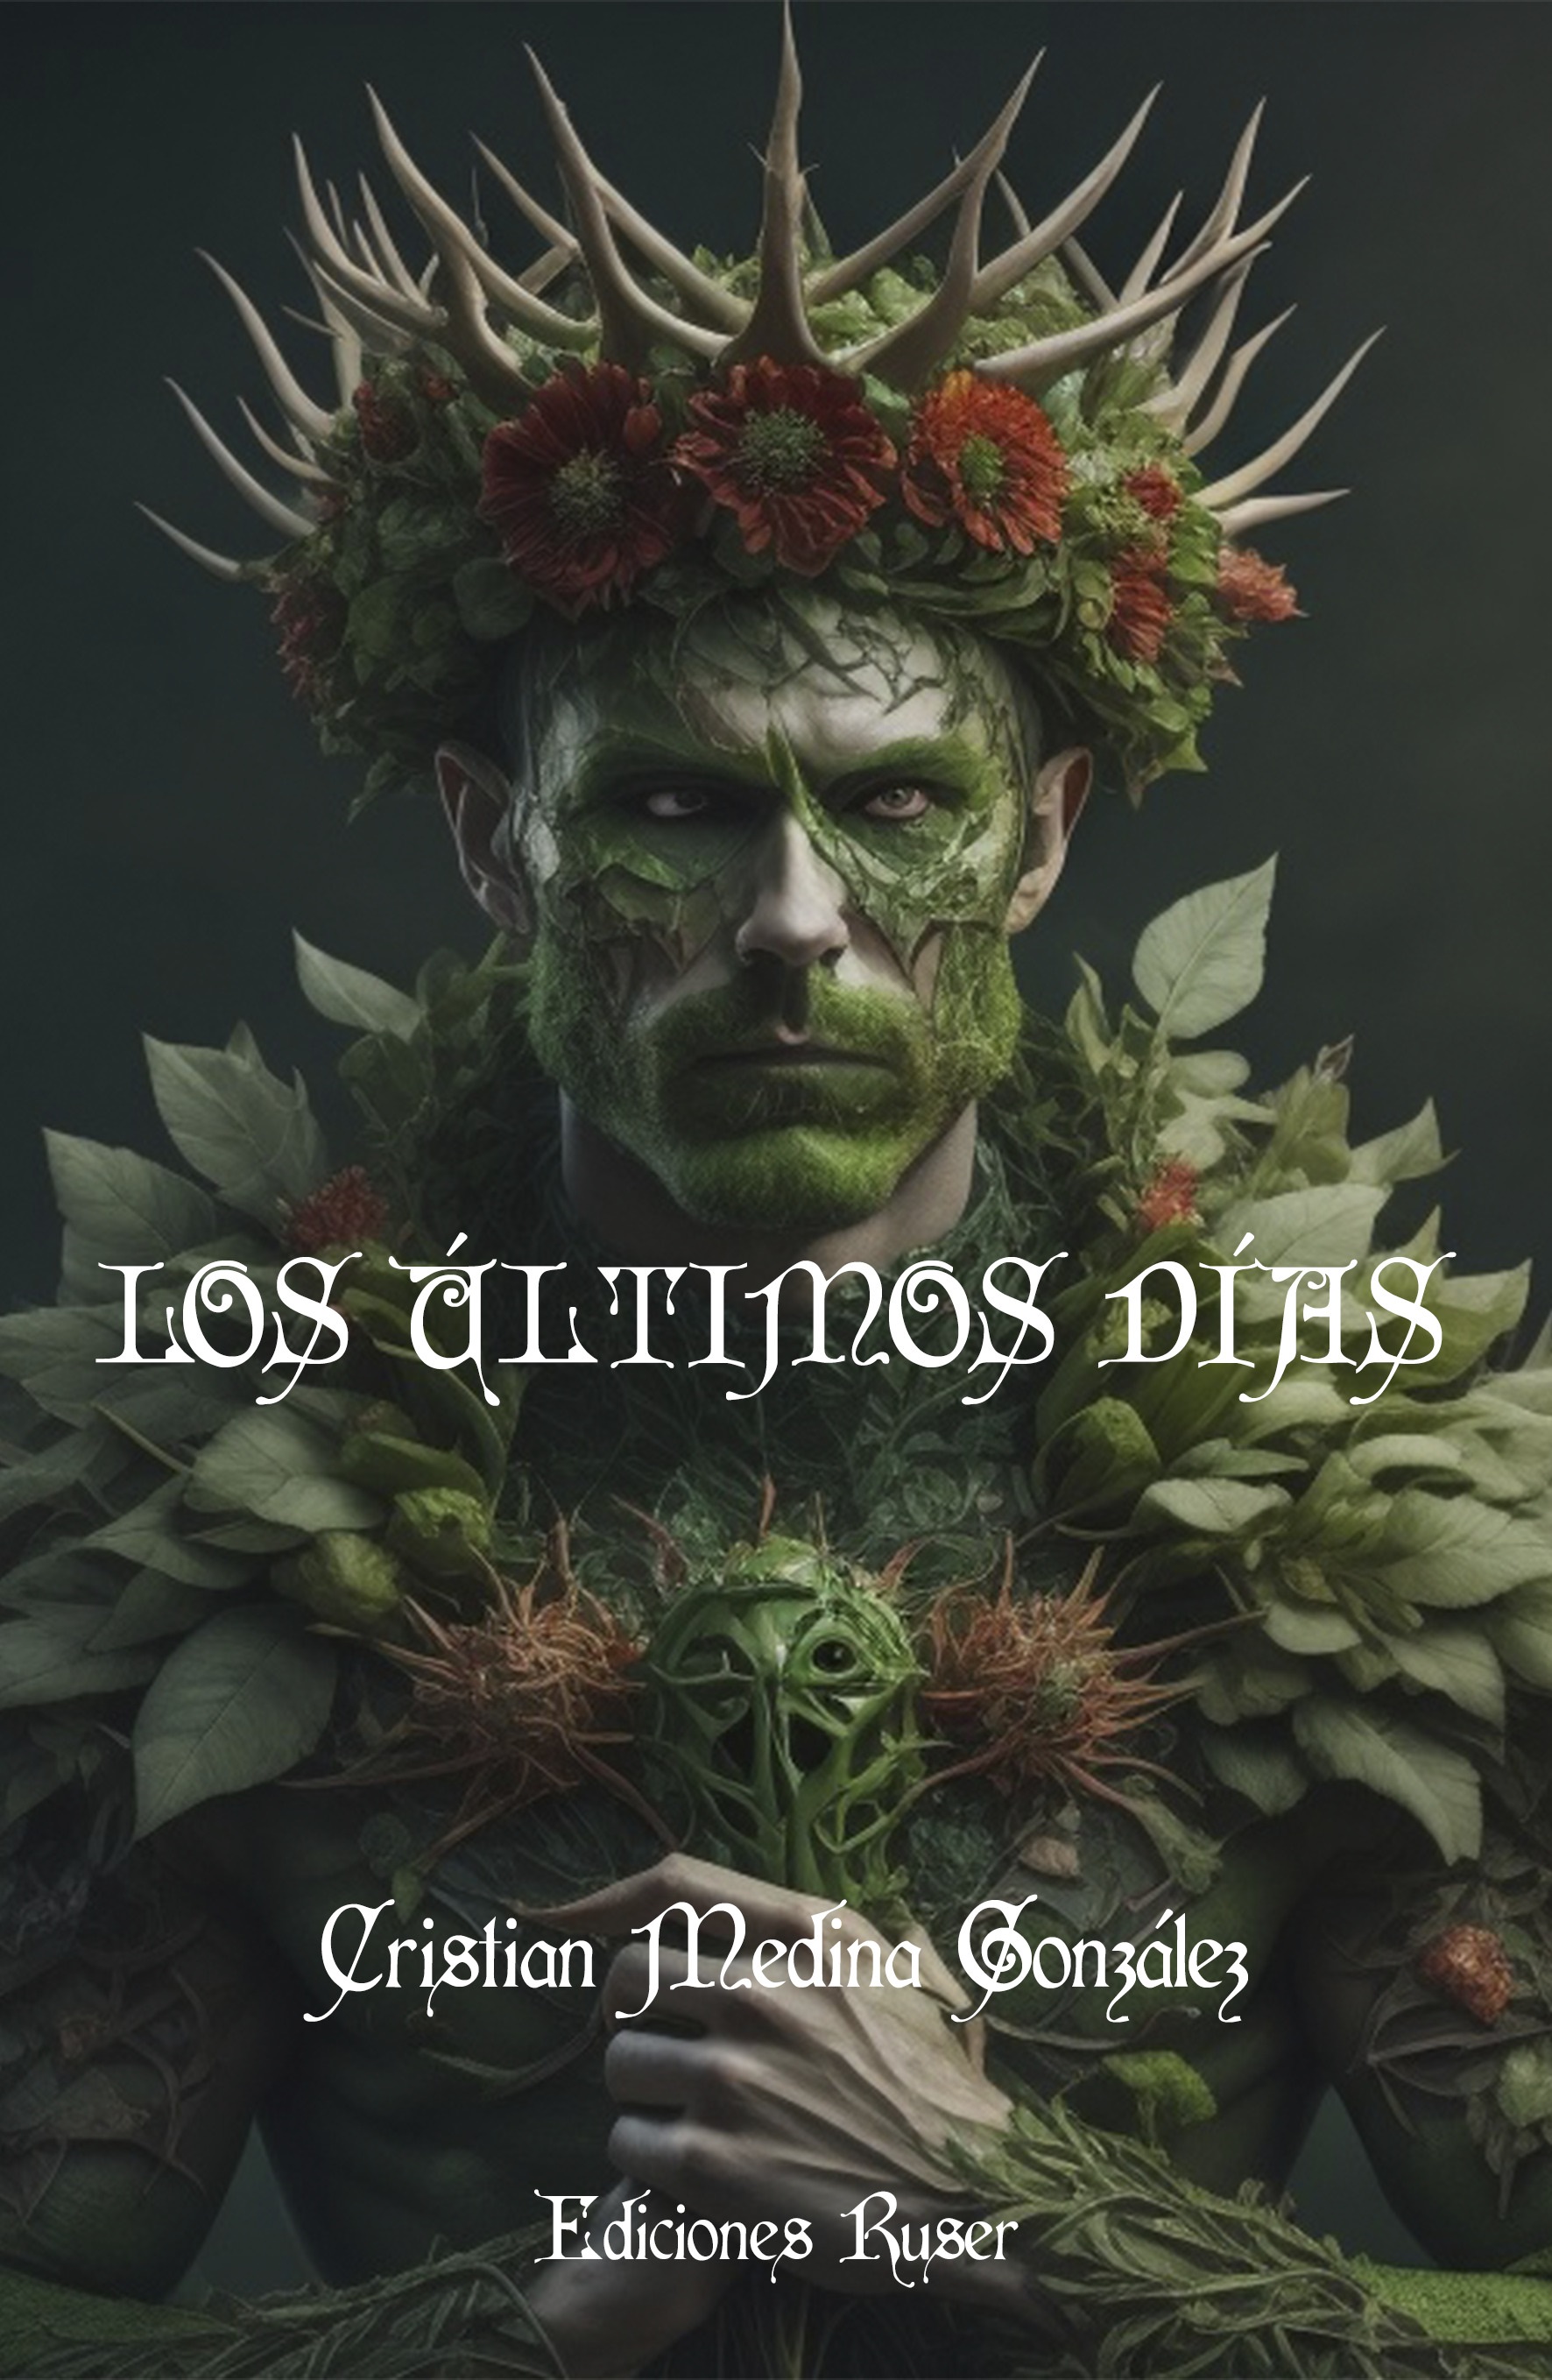 Portada de Los últimos días, la última novela fantástica de Cristian Medina que se presenta el 15 de septiembre en la Casa de Colón.